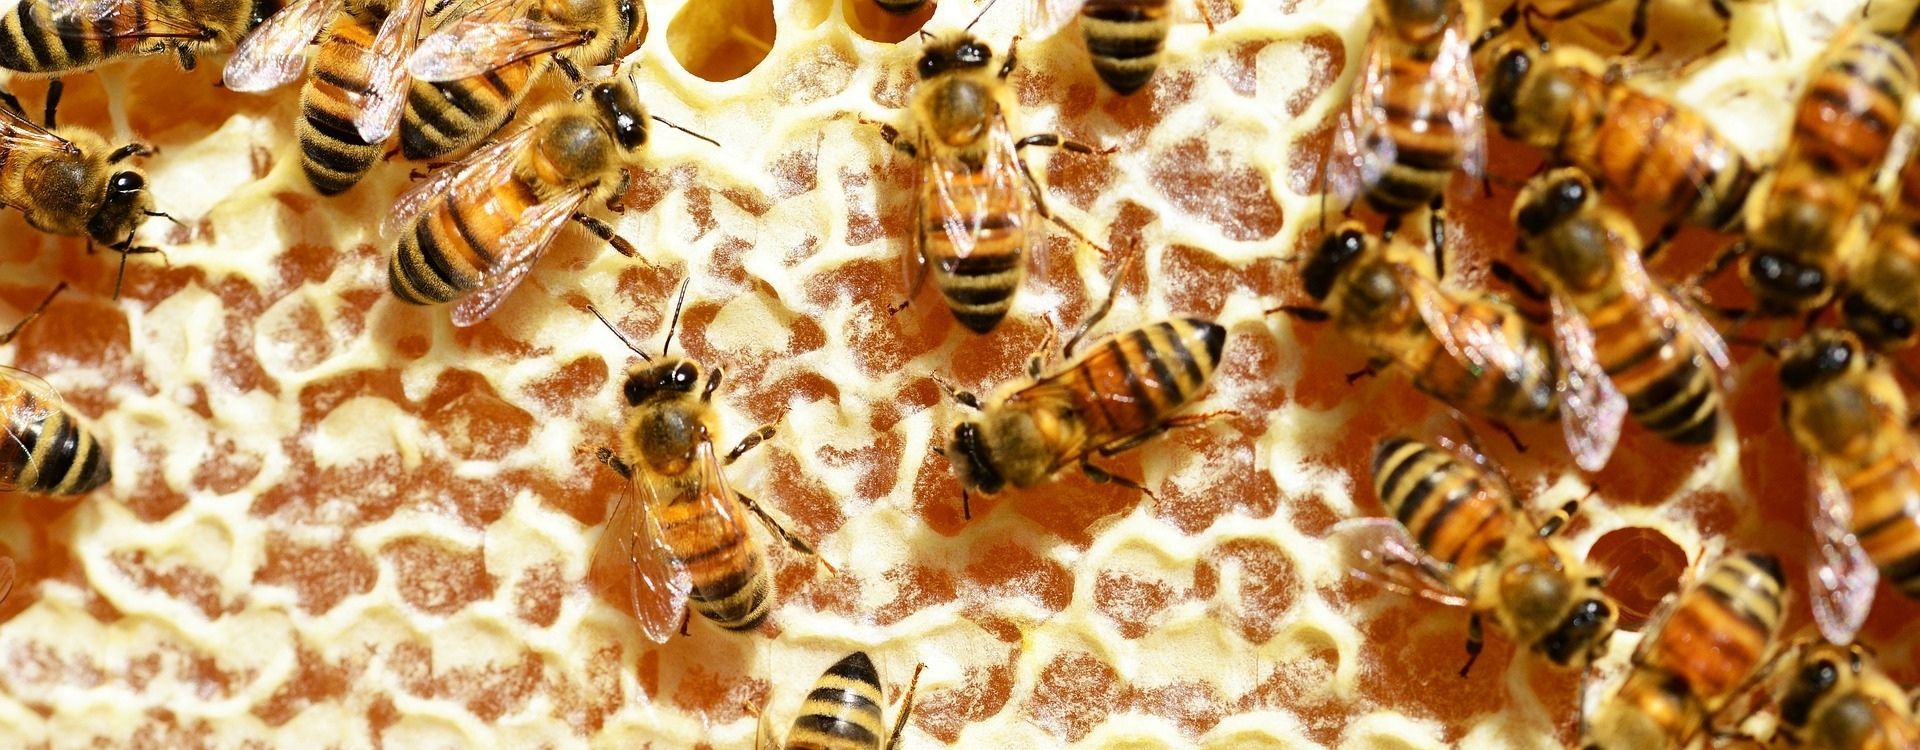 Les richesses de la ruche